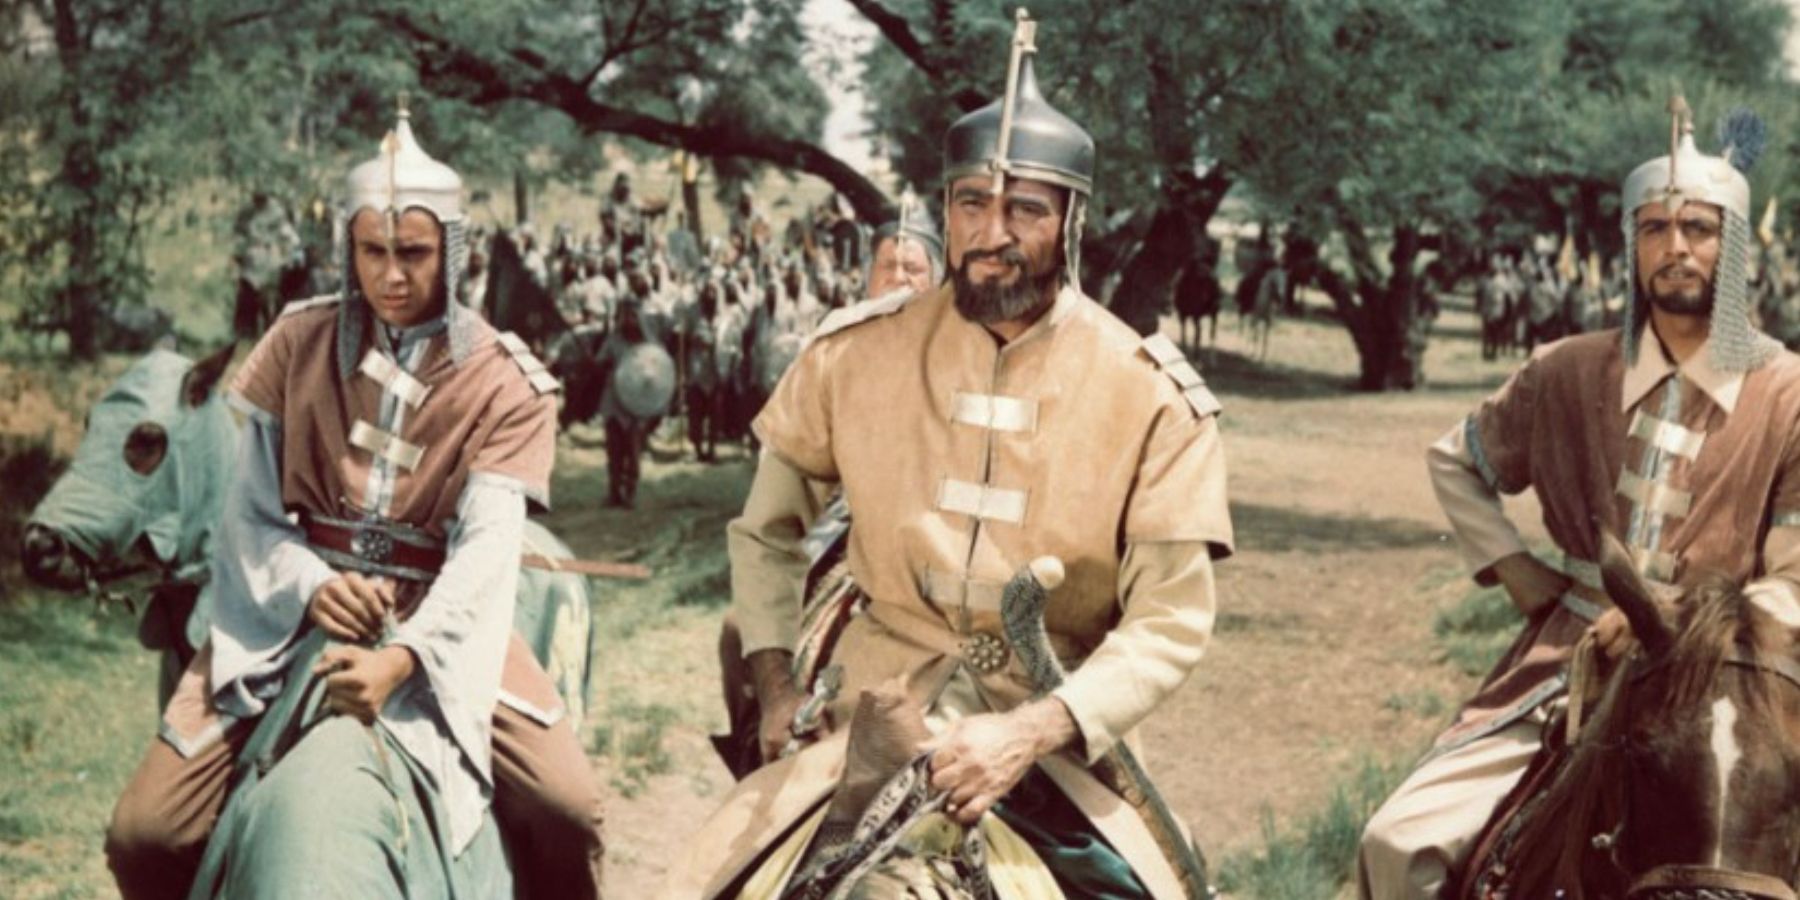 Three men on horseback in Saladin